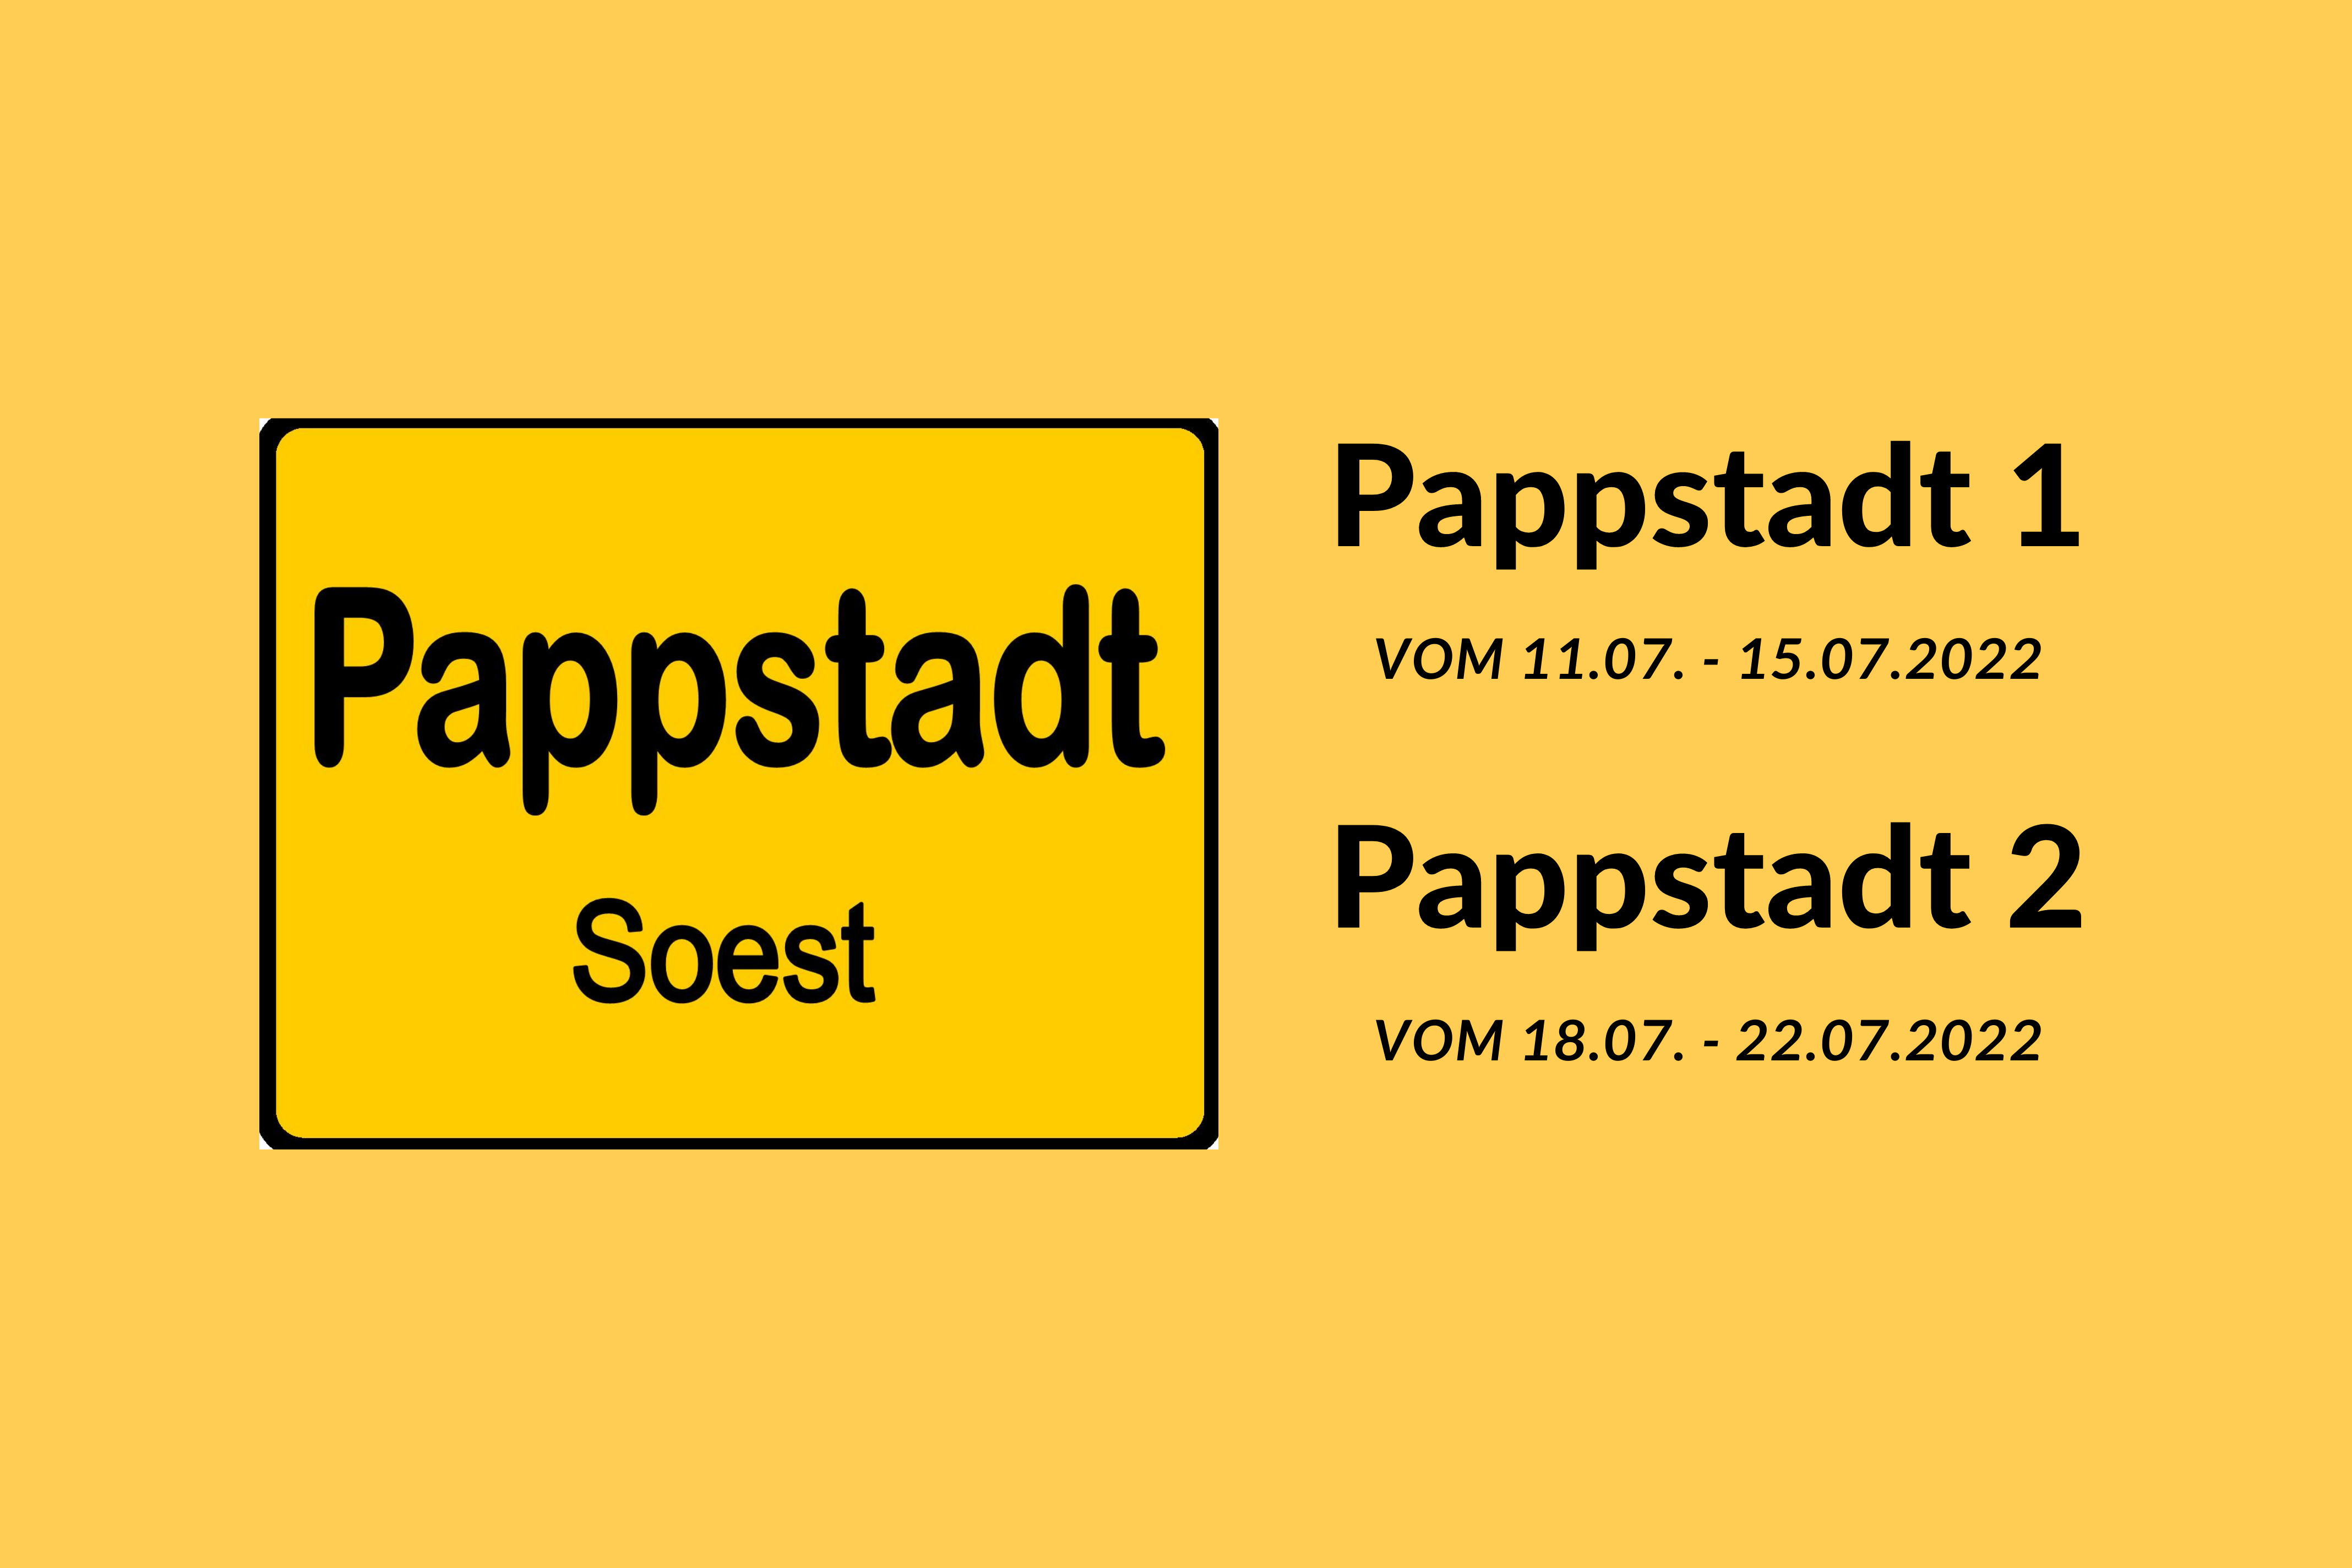 Pappstadt SoestPappstadt 1 11.07. - 15.07.2022Pappstadt 2 18.07. - 22.07.2022